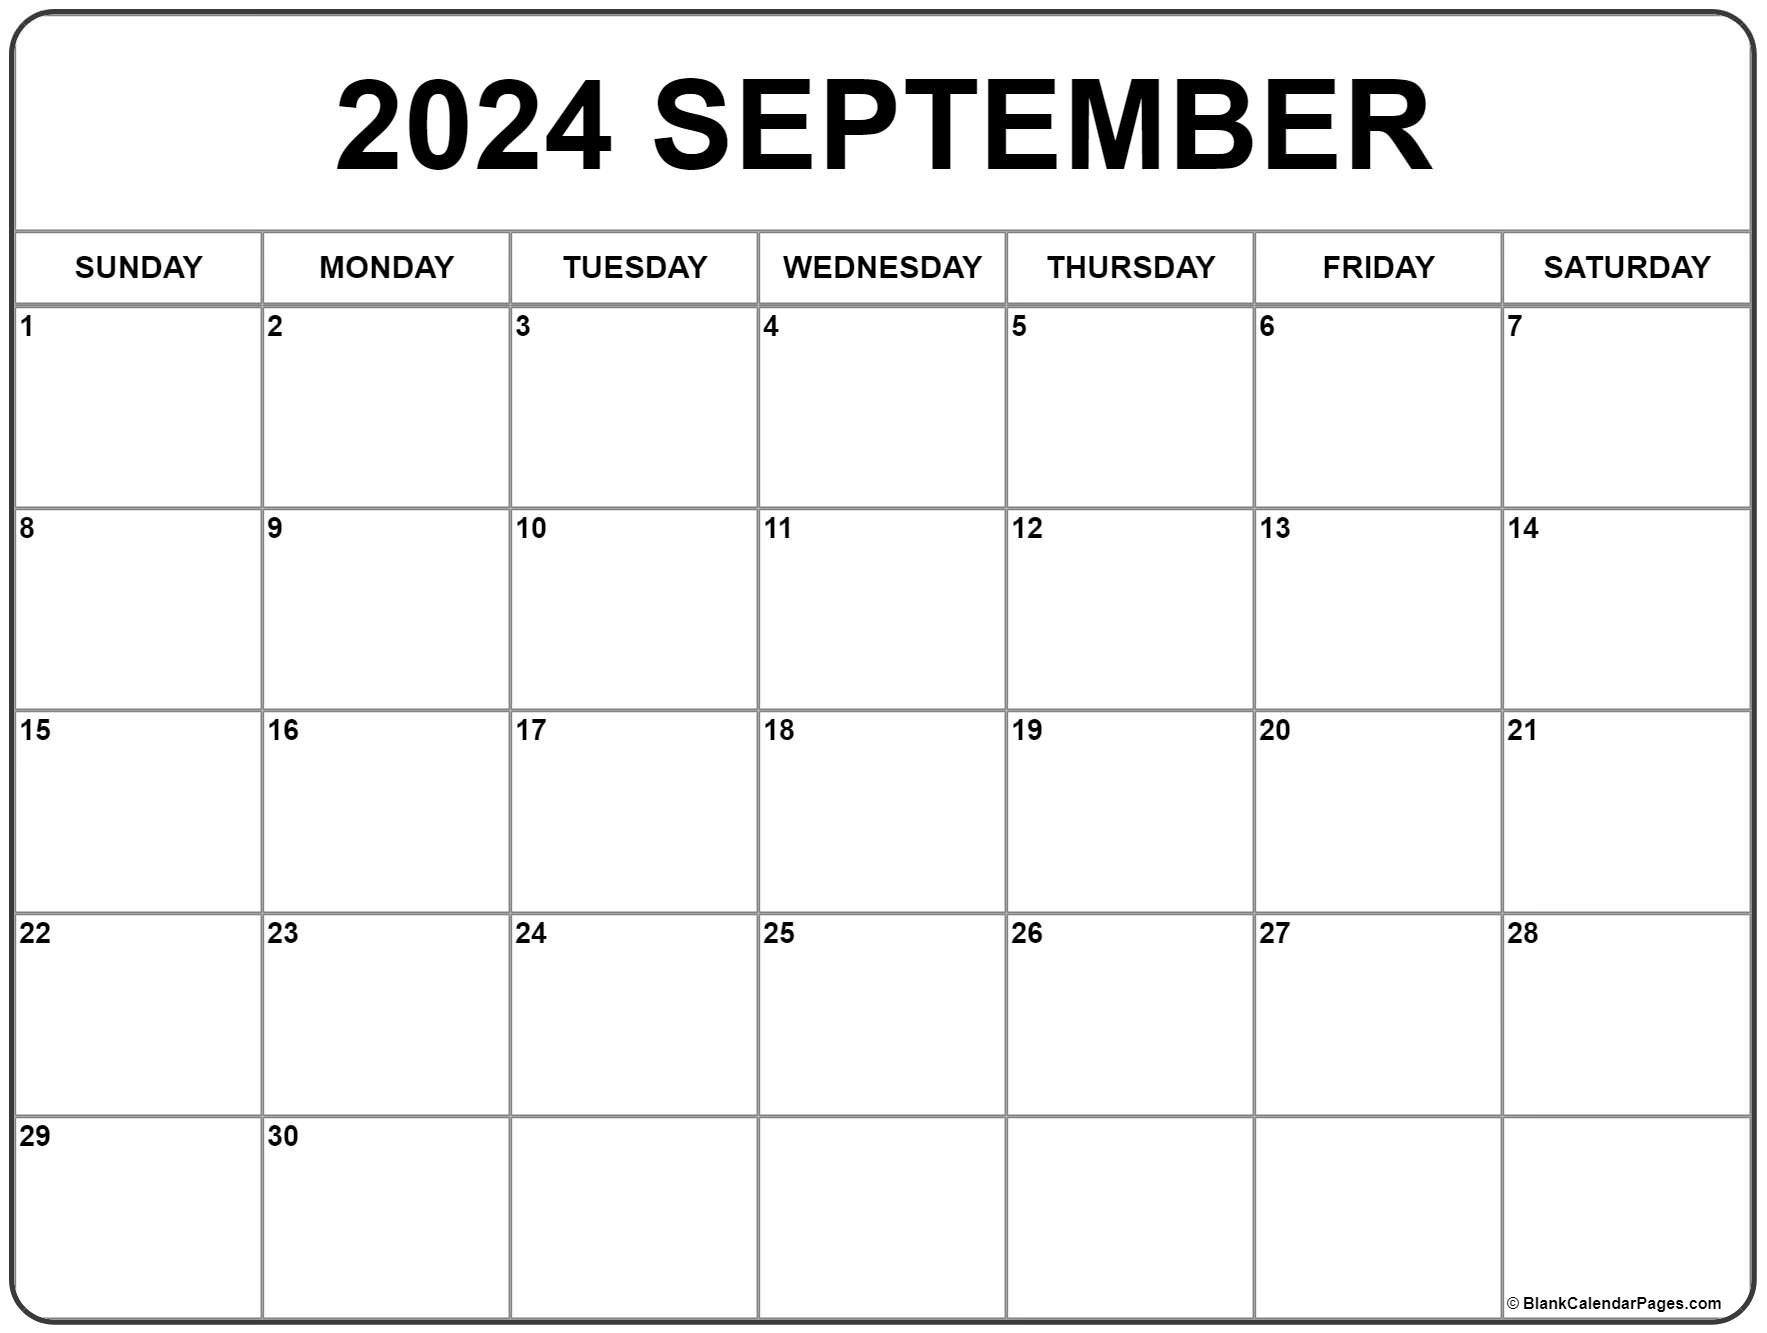 Sept 2024 Printable Calendar Dec 2024 Calendar With Holidays | Free Printable 2024 Calendar September 24calendars